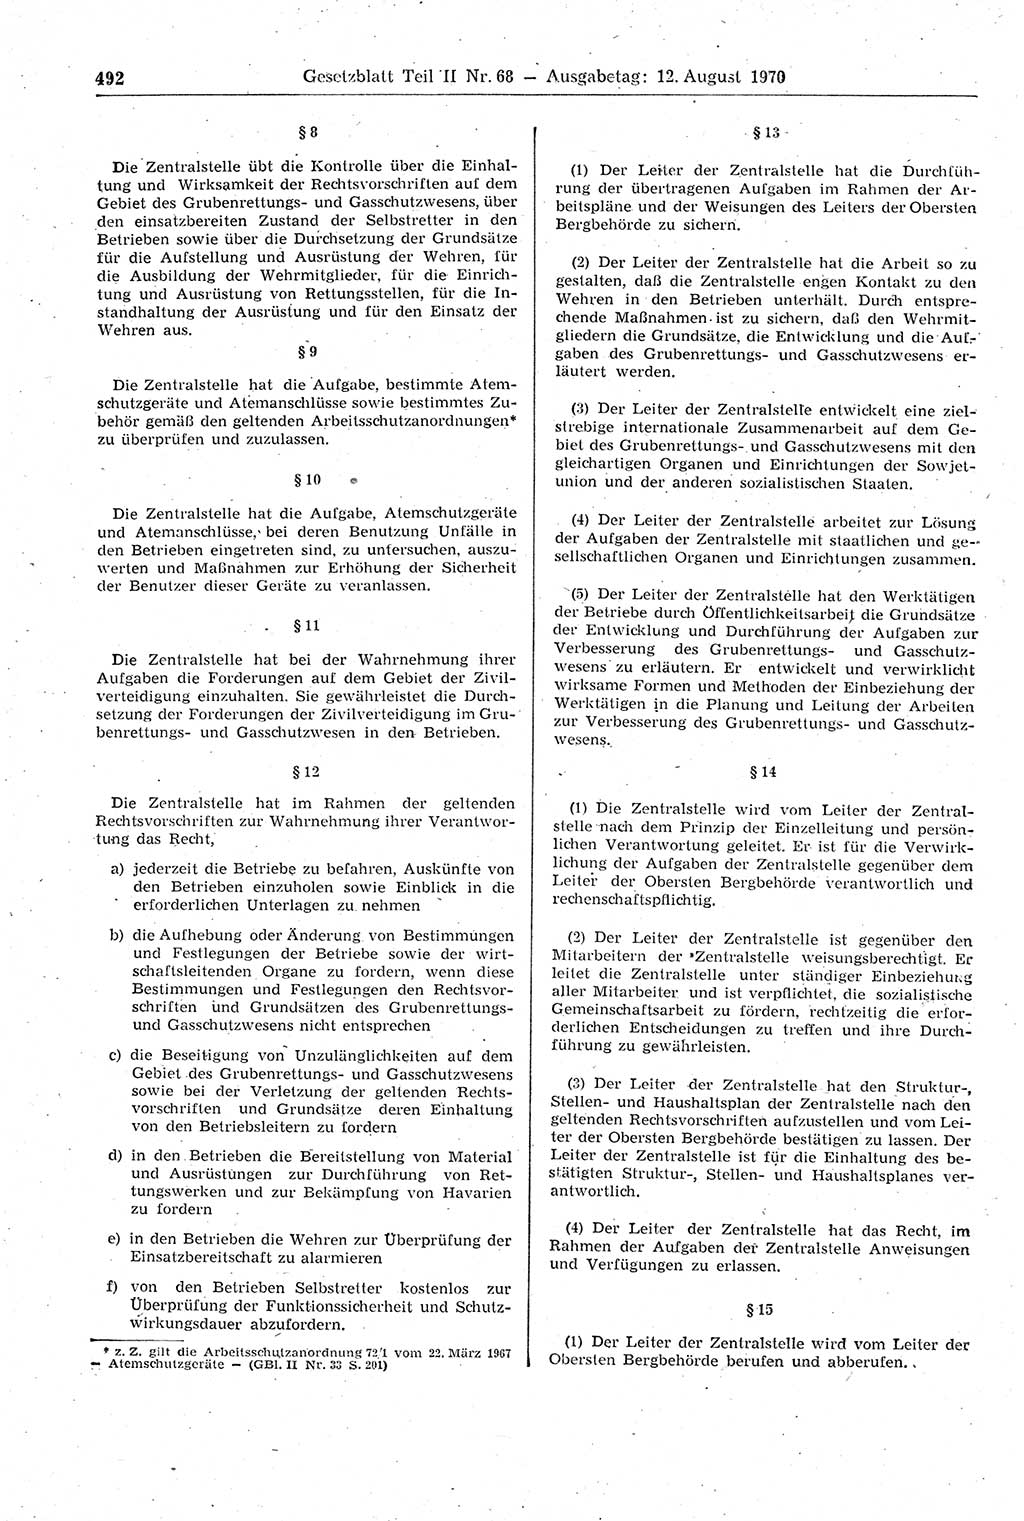 Gesetzblatt (GBl.) der Deutschen Demokratischen Republik (DDR) Teil ⅠⅠ 1970, Seite 492 (GBl. DDR ⅠⅠ 1970, S. 492)